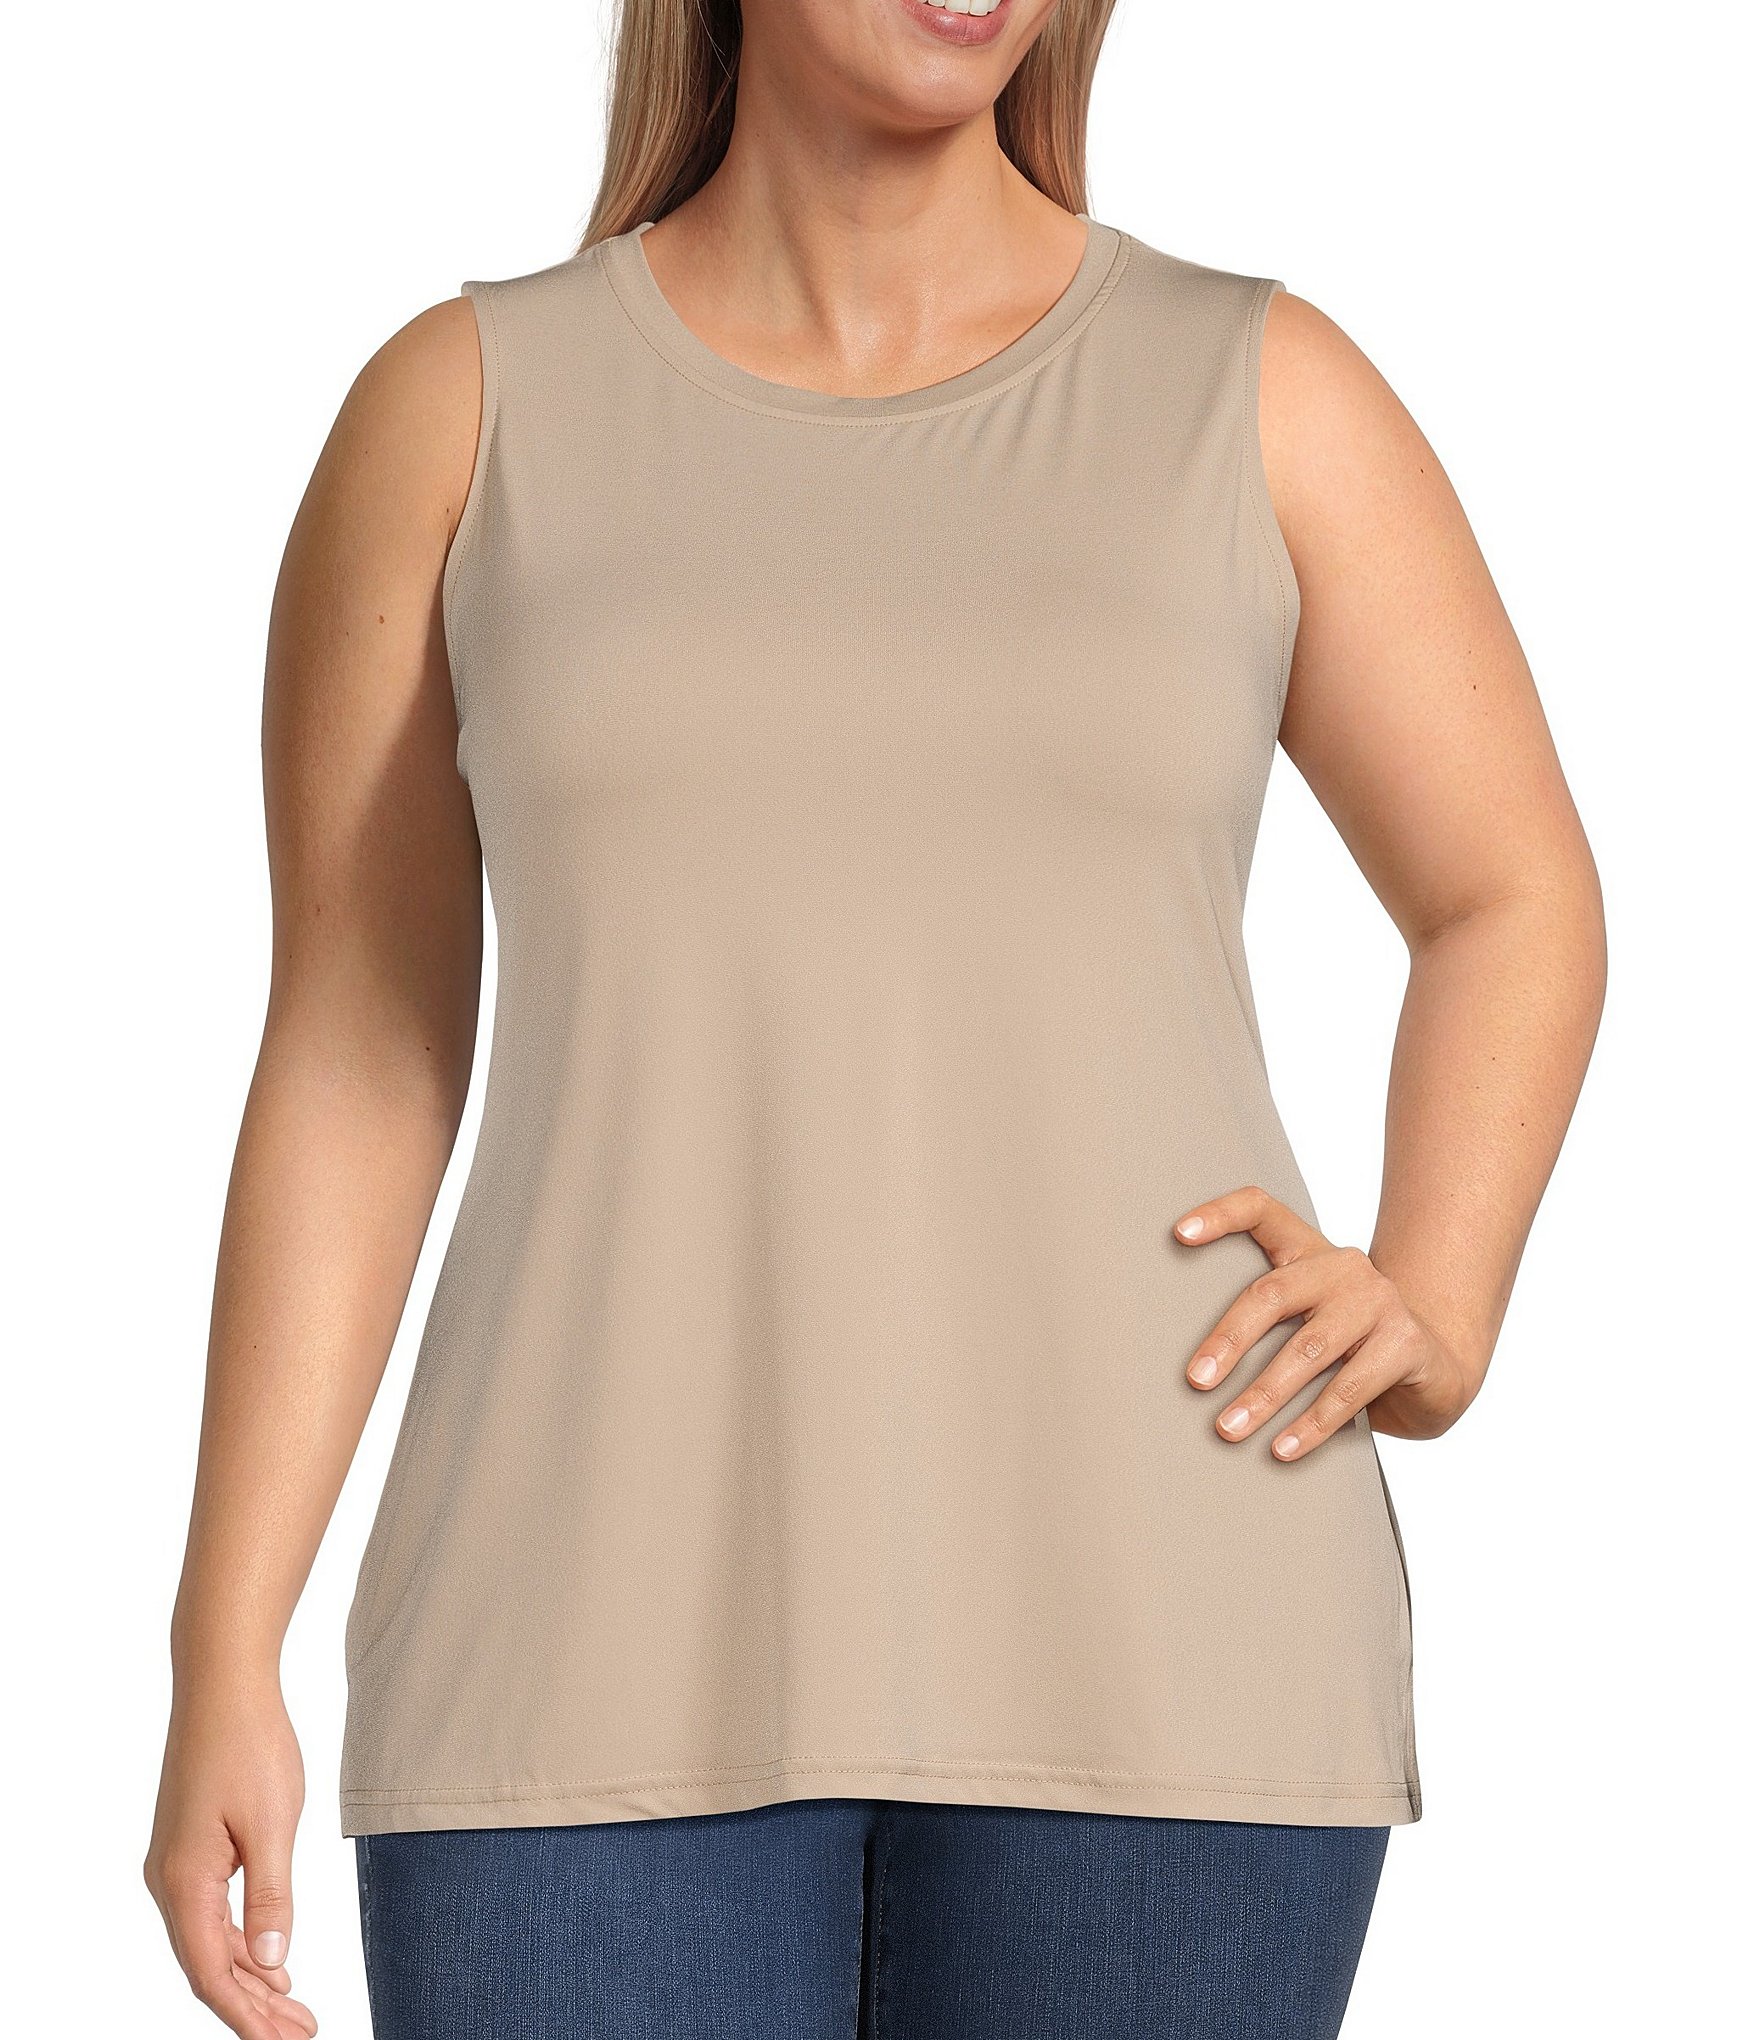 sleeveless blouse: Women's Plus Size Clothing